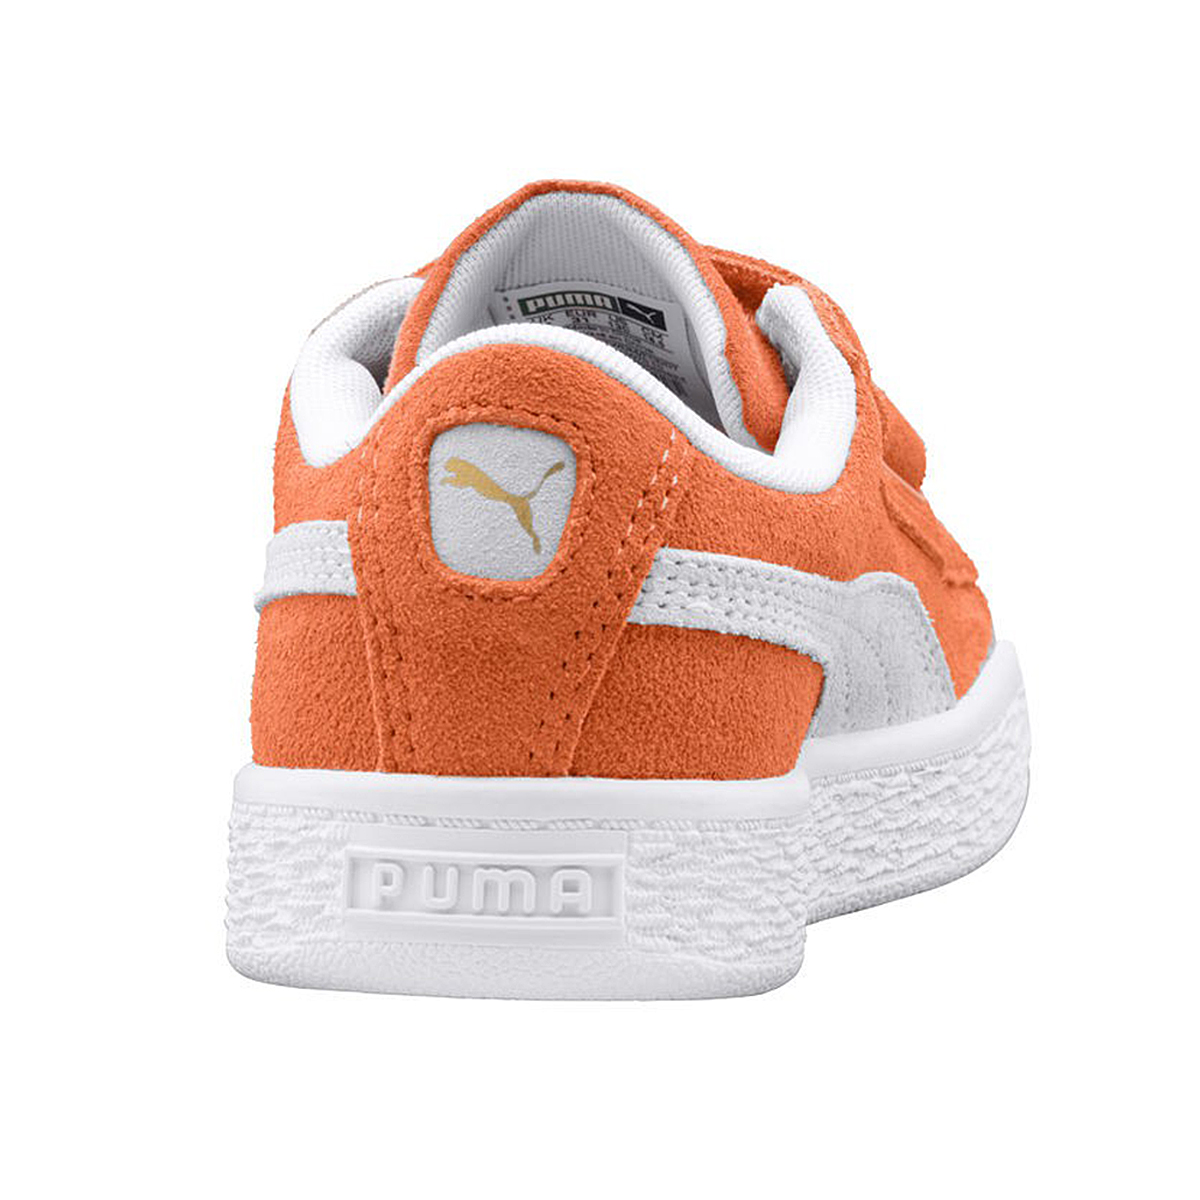 Puma Suede Classic V Inf Kinder Sneaker Schuhe 365077 15 orange